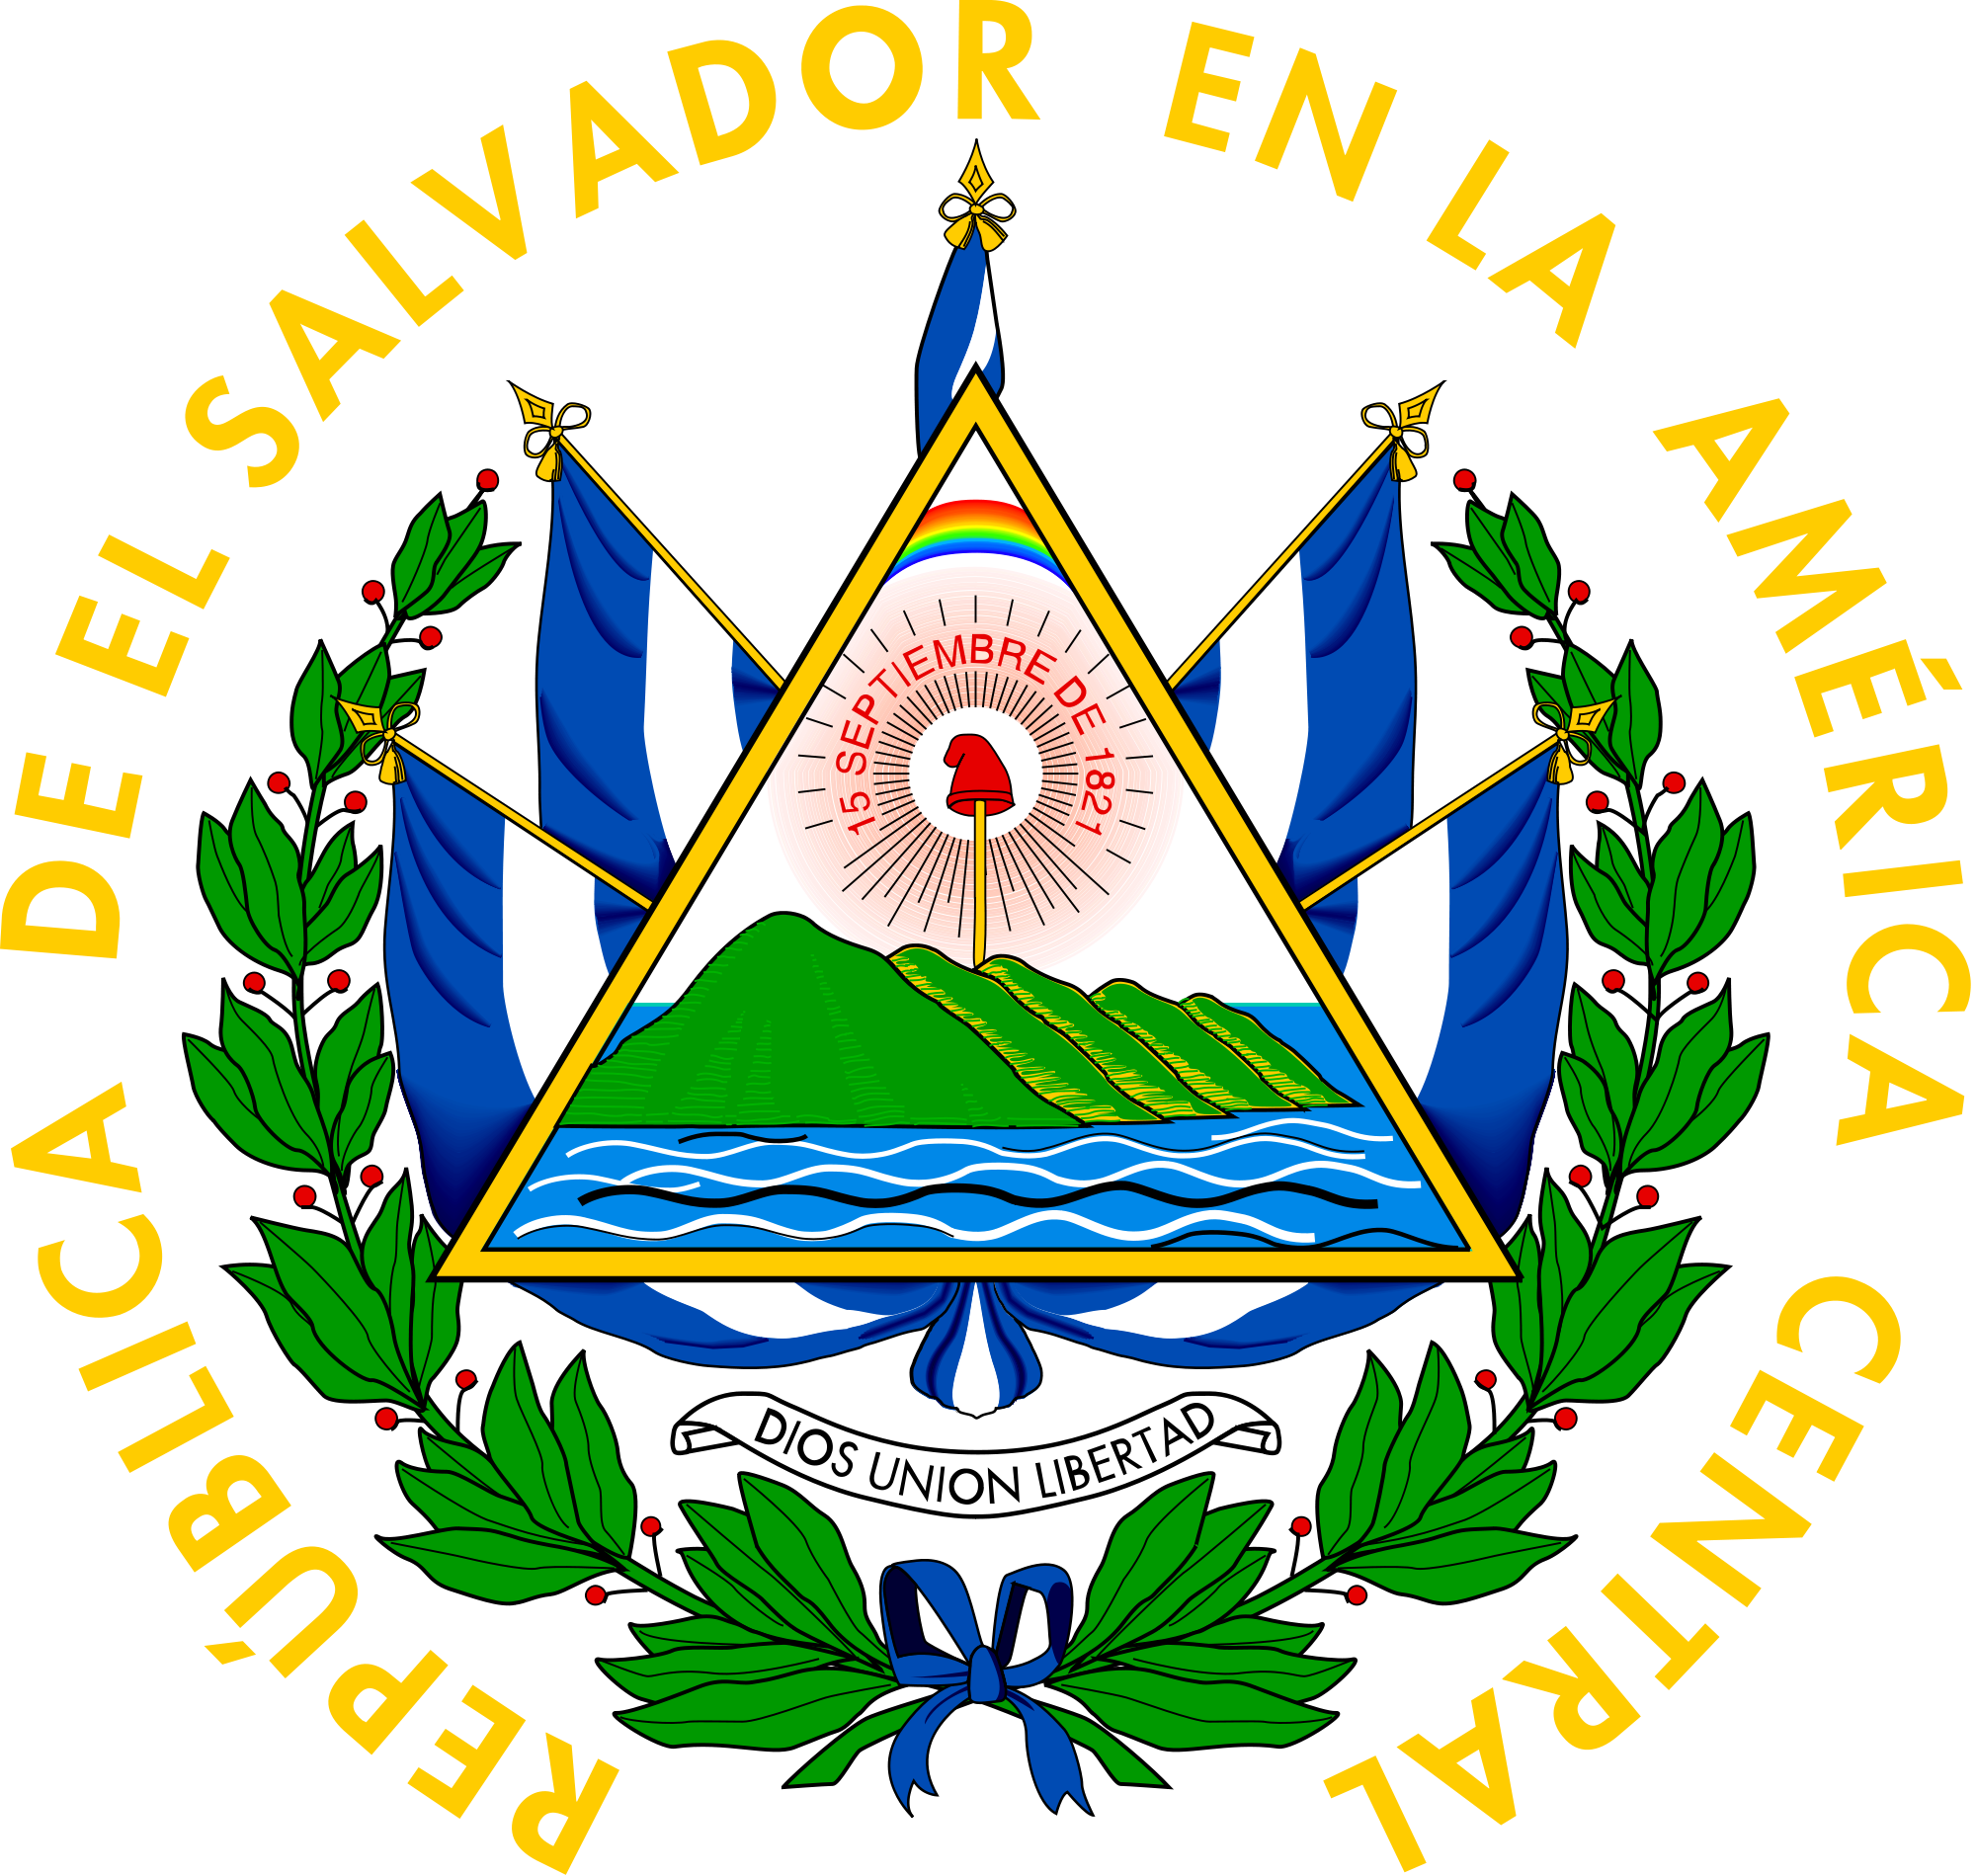 El Salvador Emblem